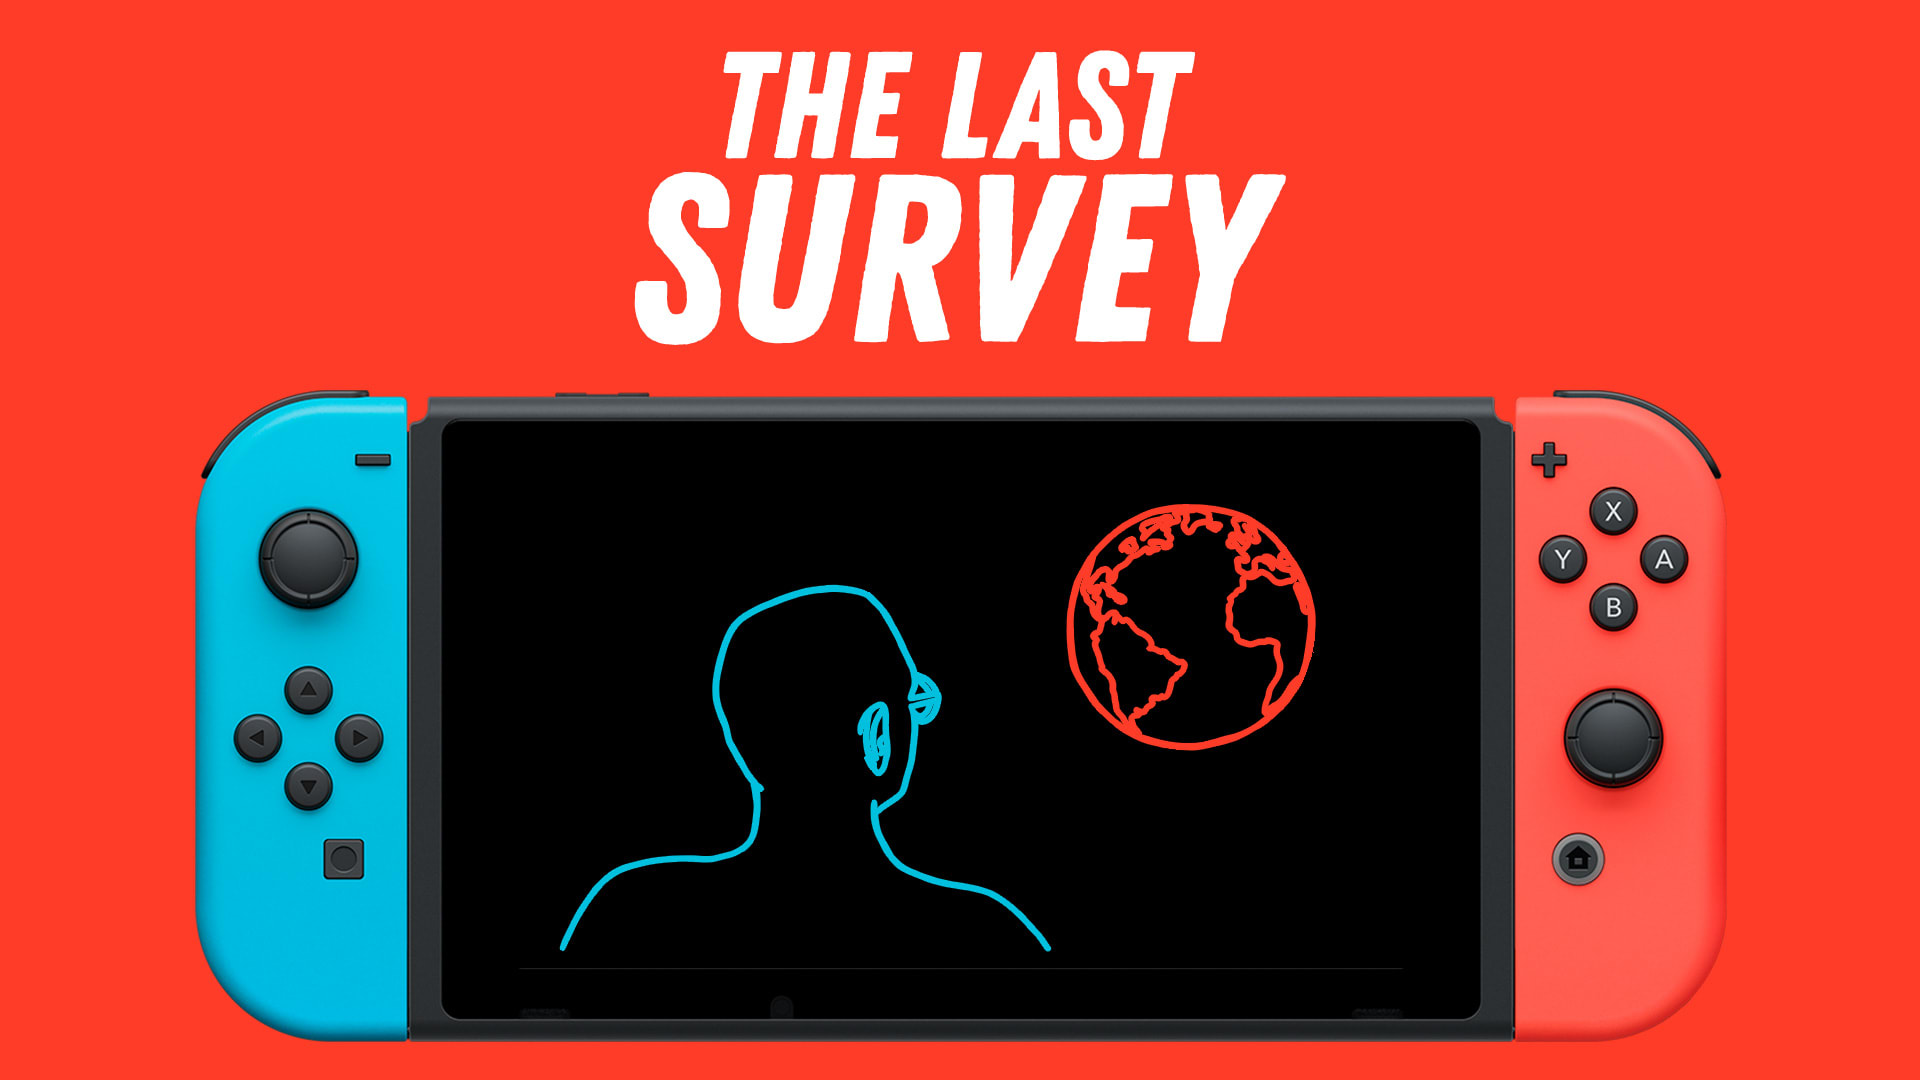 The Last Survey 1